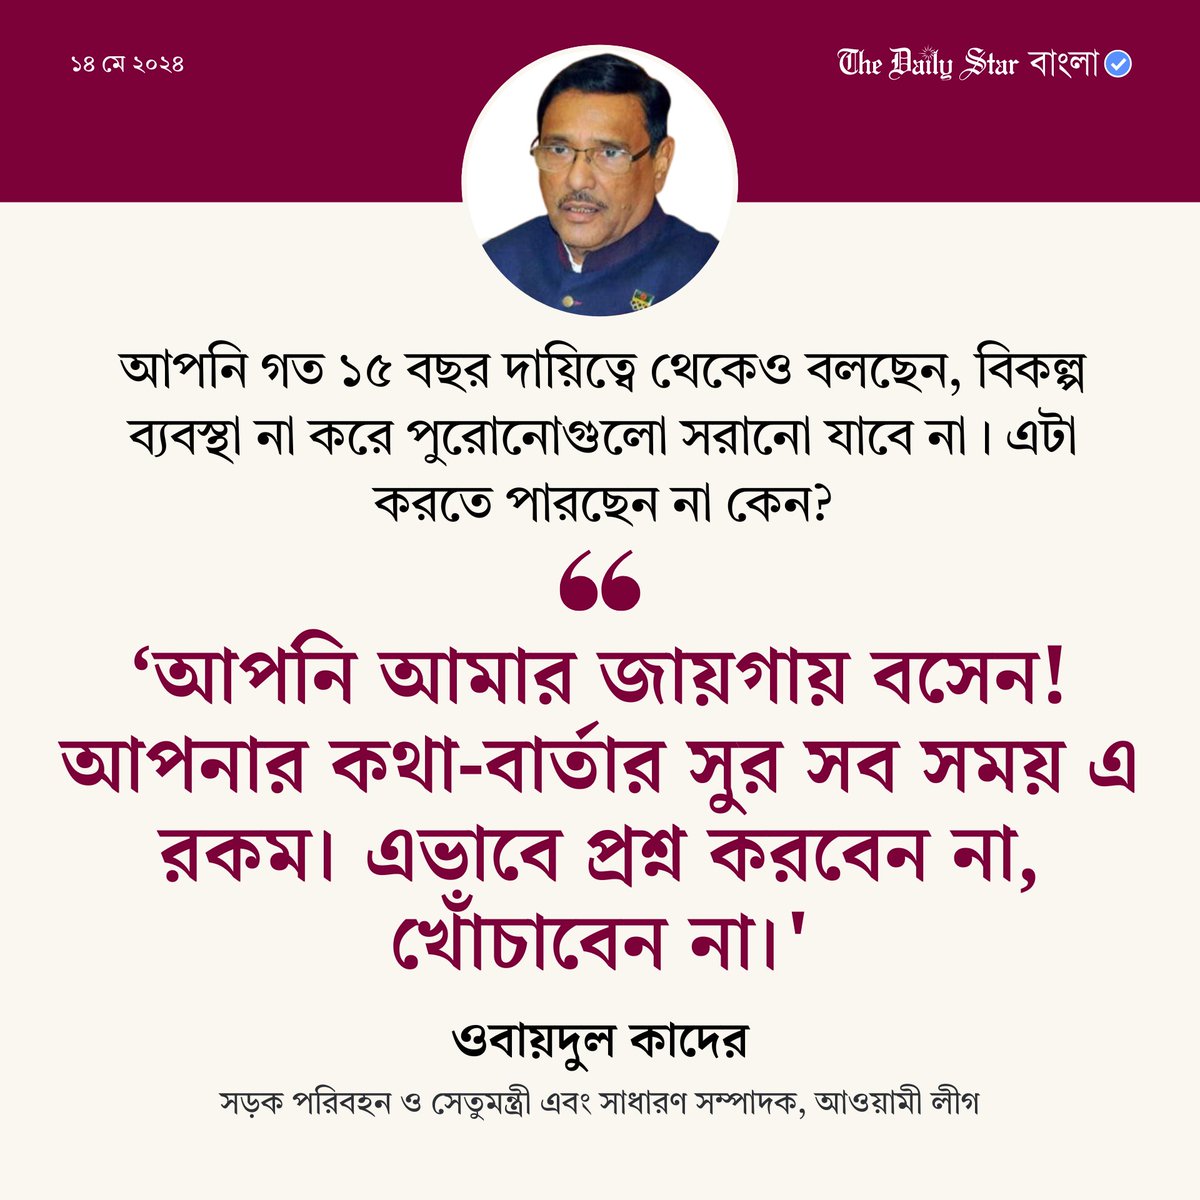 বিস্তারিতঃ tinyurl.com/m55baseu
#Bangladesh #ObaidulQuader #NewsUpdates